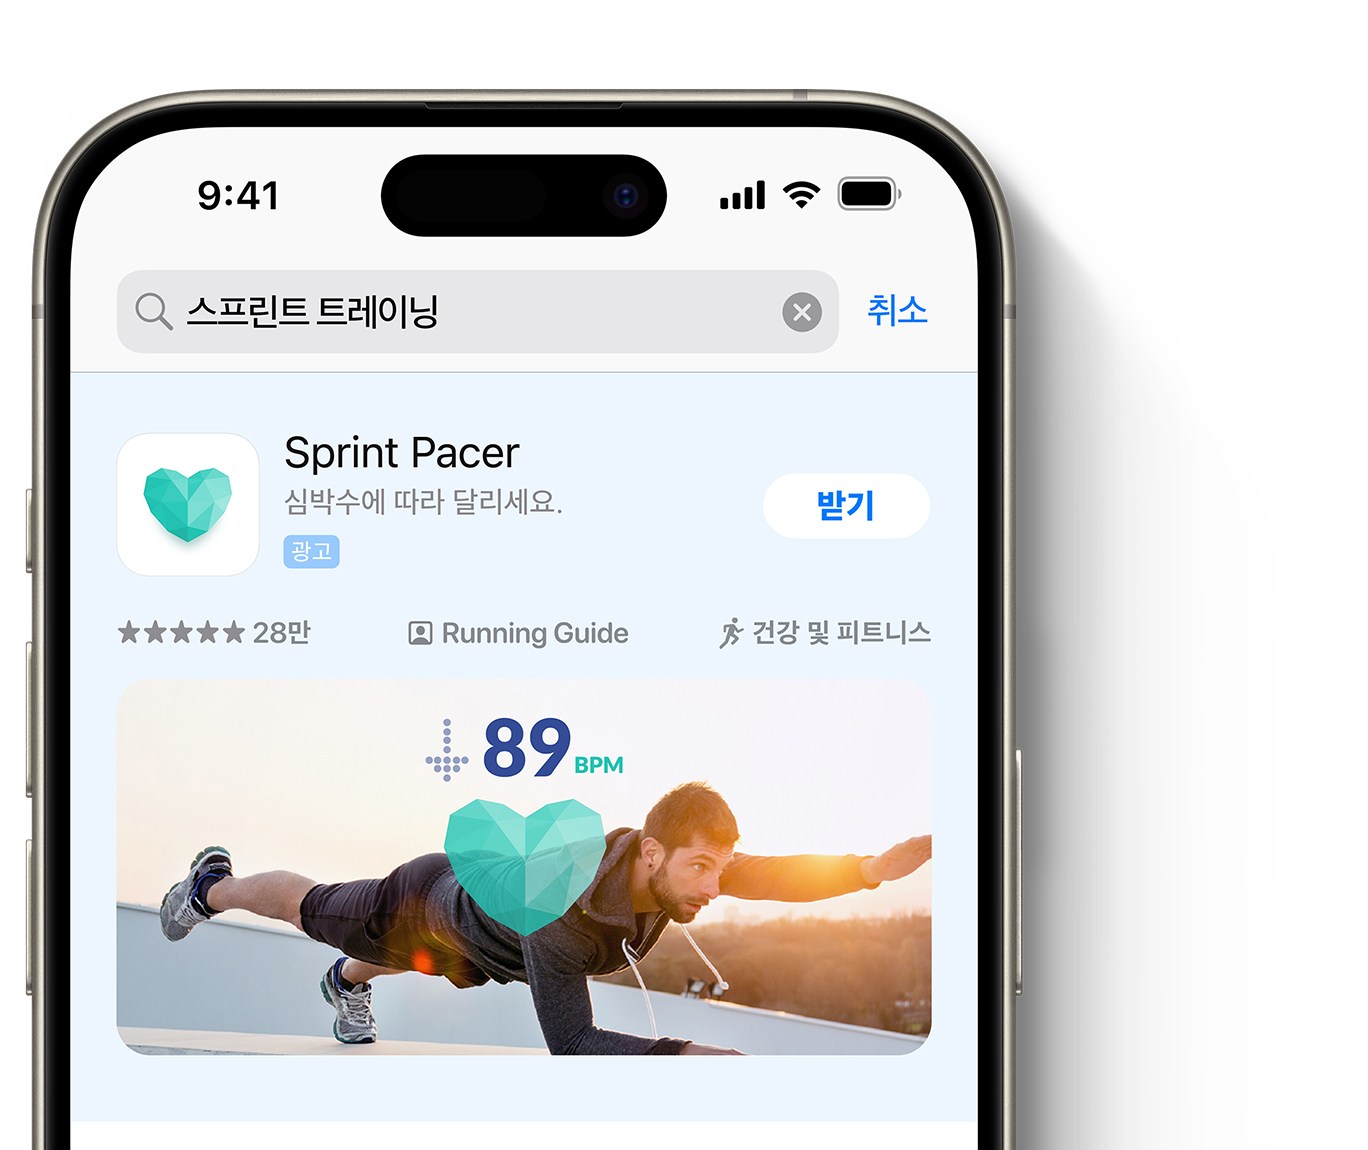 Sprint Pacer 앱에 대한 광고가 App Store 검색 결과 상단에 표시되어 있습니다. 